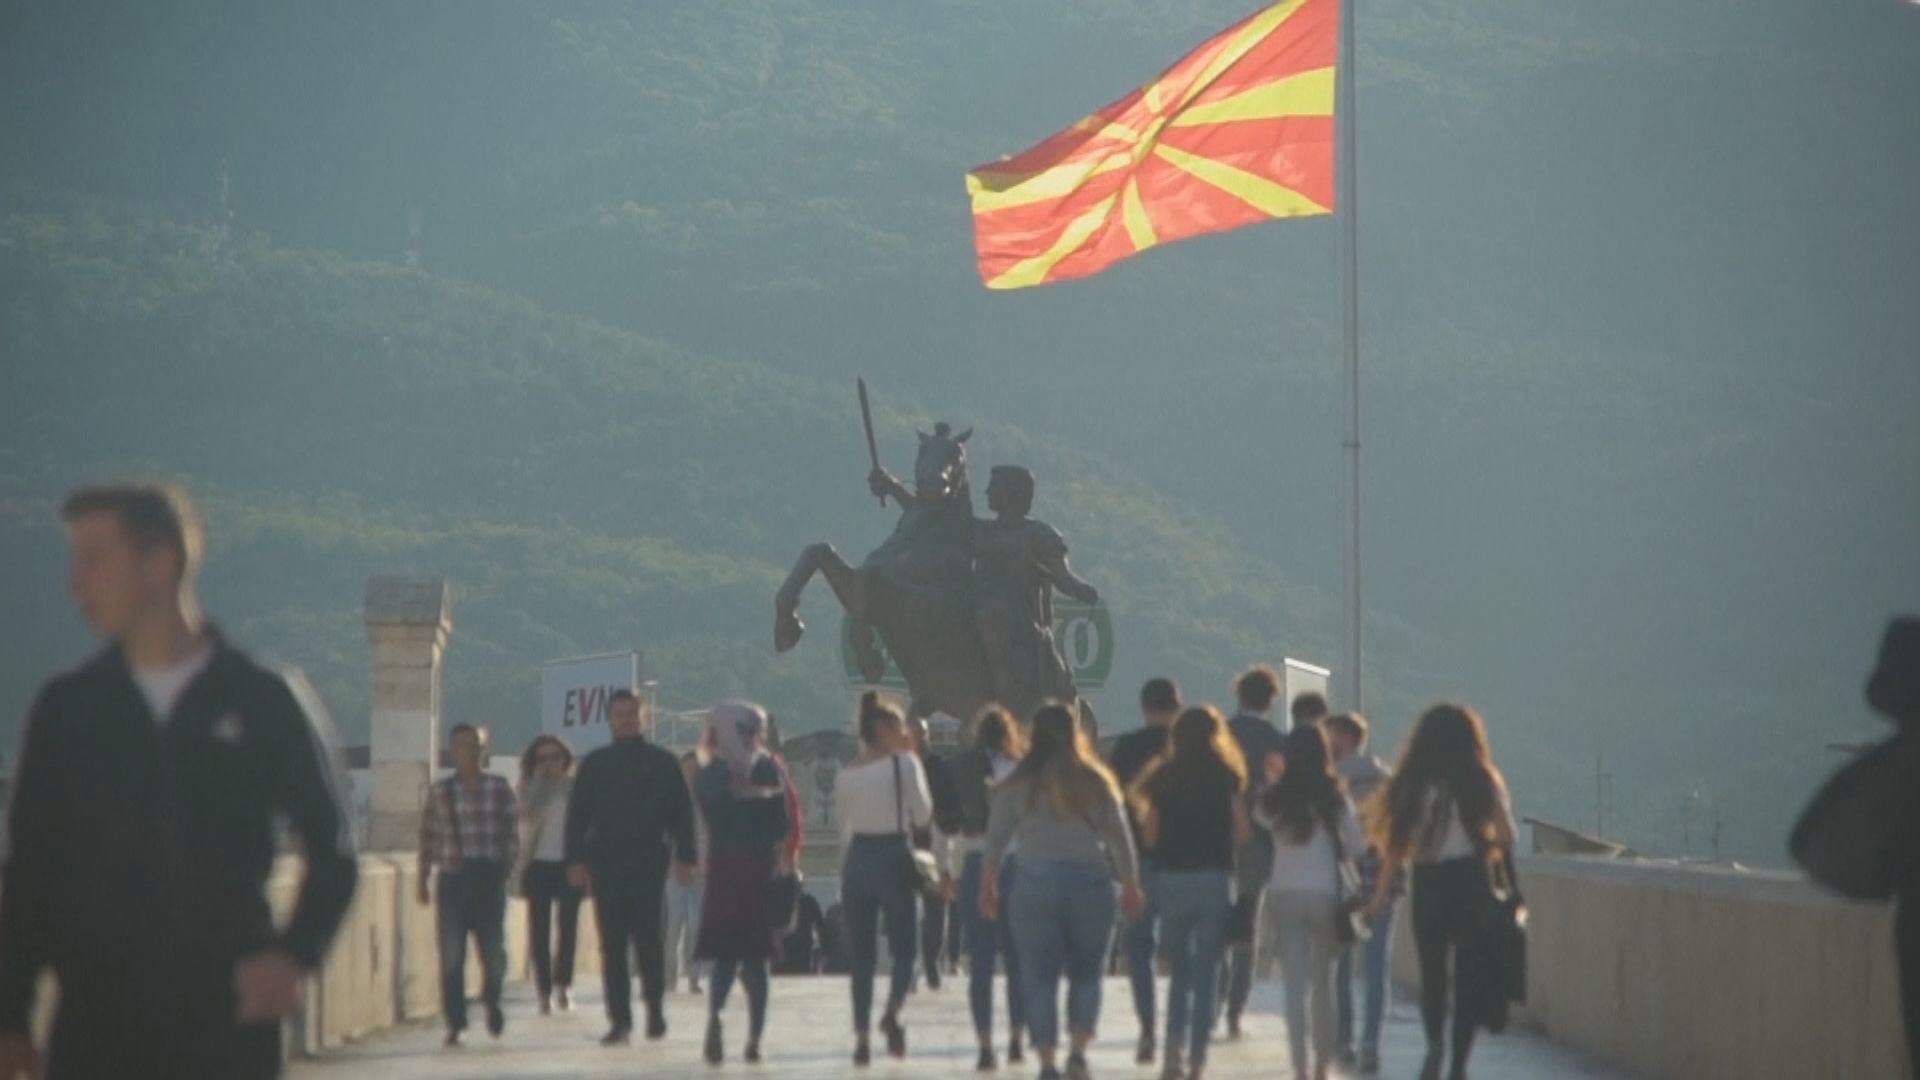 馬其頓國會通過修憲更改國名